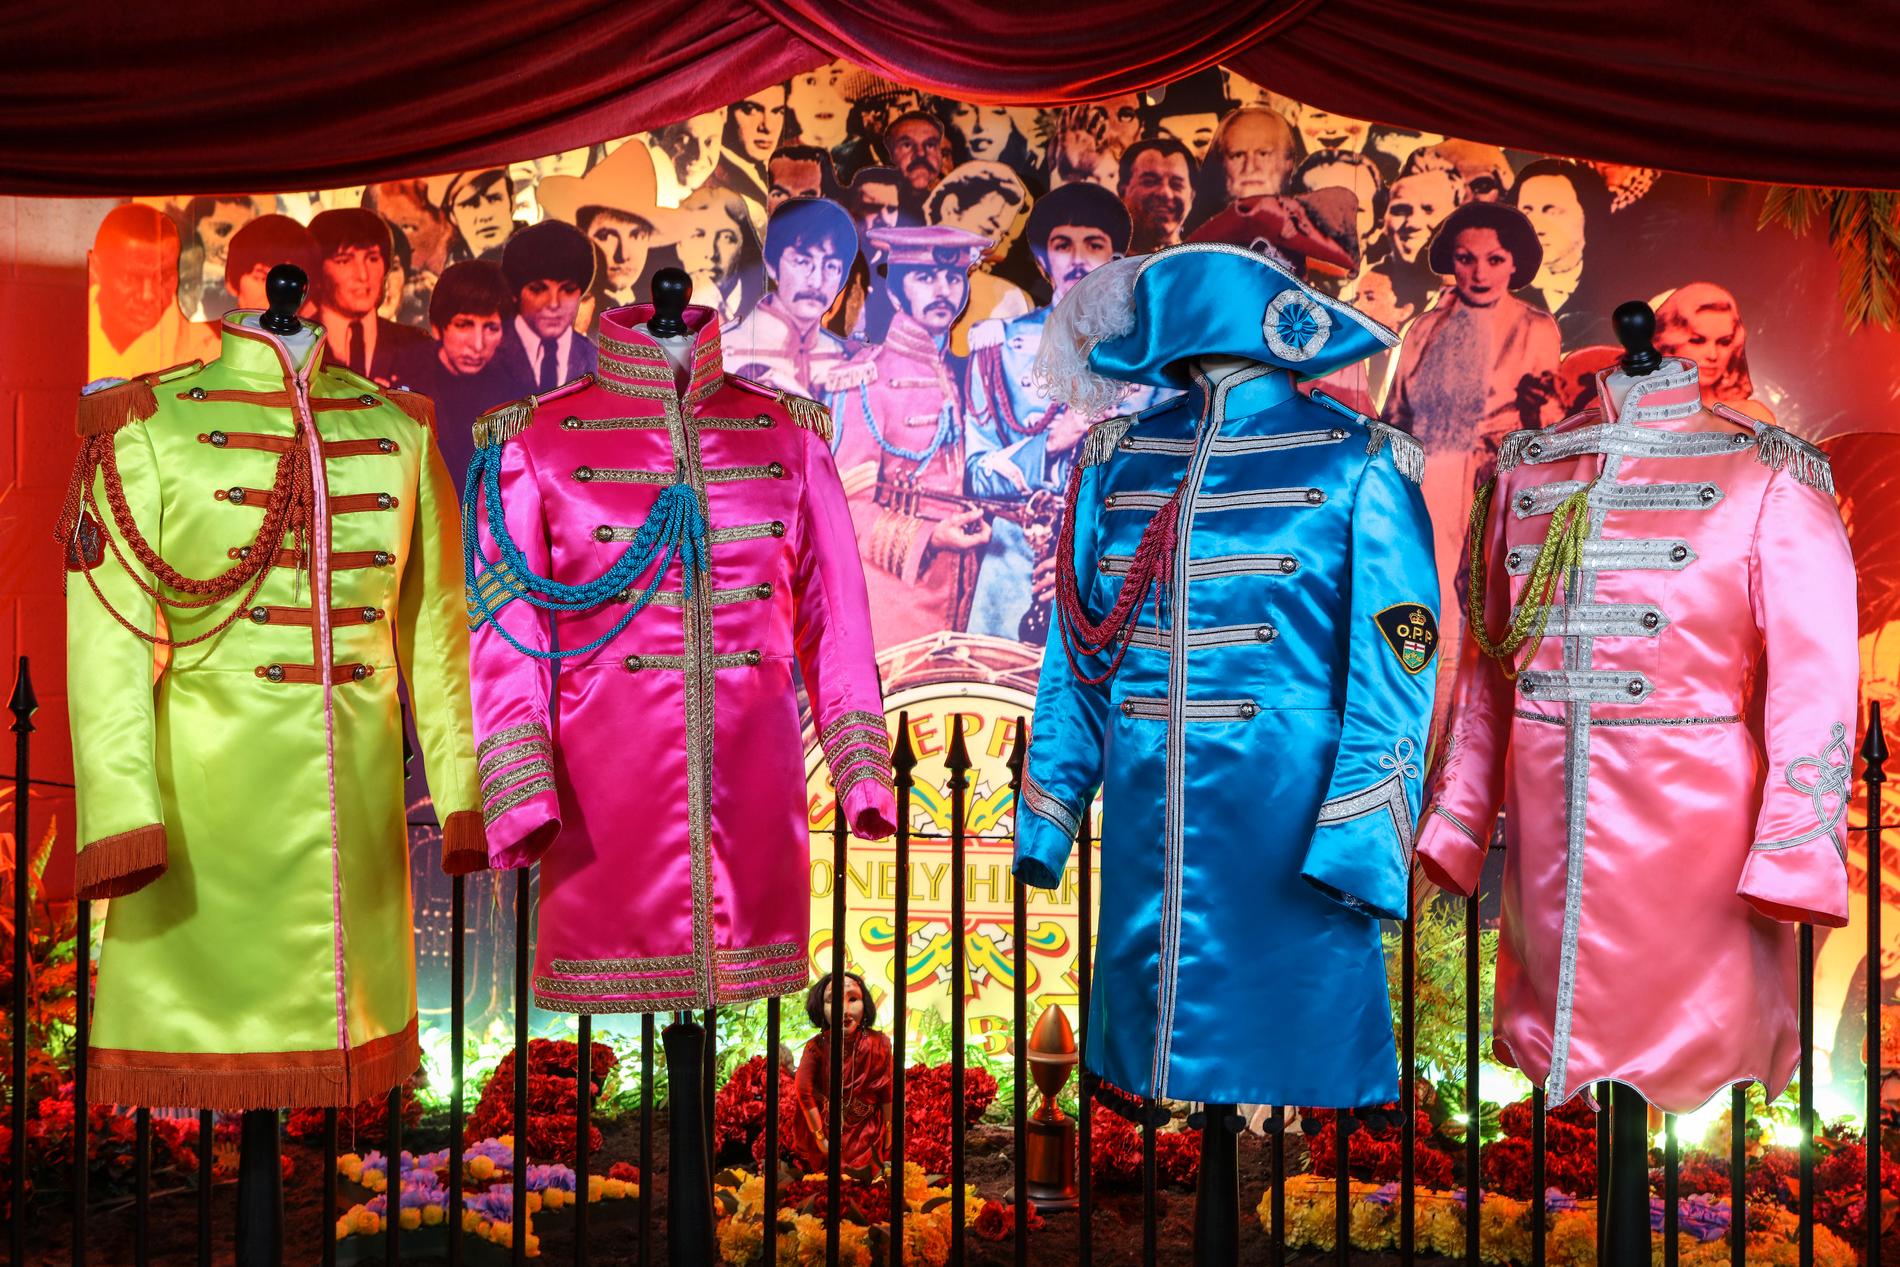 The Beatles Story ved Albert Dock ble grunnlagt i 1990 og er et populært museum med over 300.000 besøkende pr. år. En tro kopi av de fargerike kostymene fra «Sgt. Pepper's Lonely Hearts Club Band» (1967) er blant trekkplastrene.  